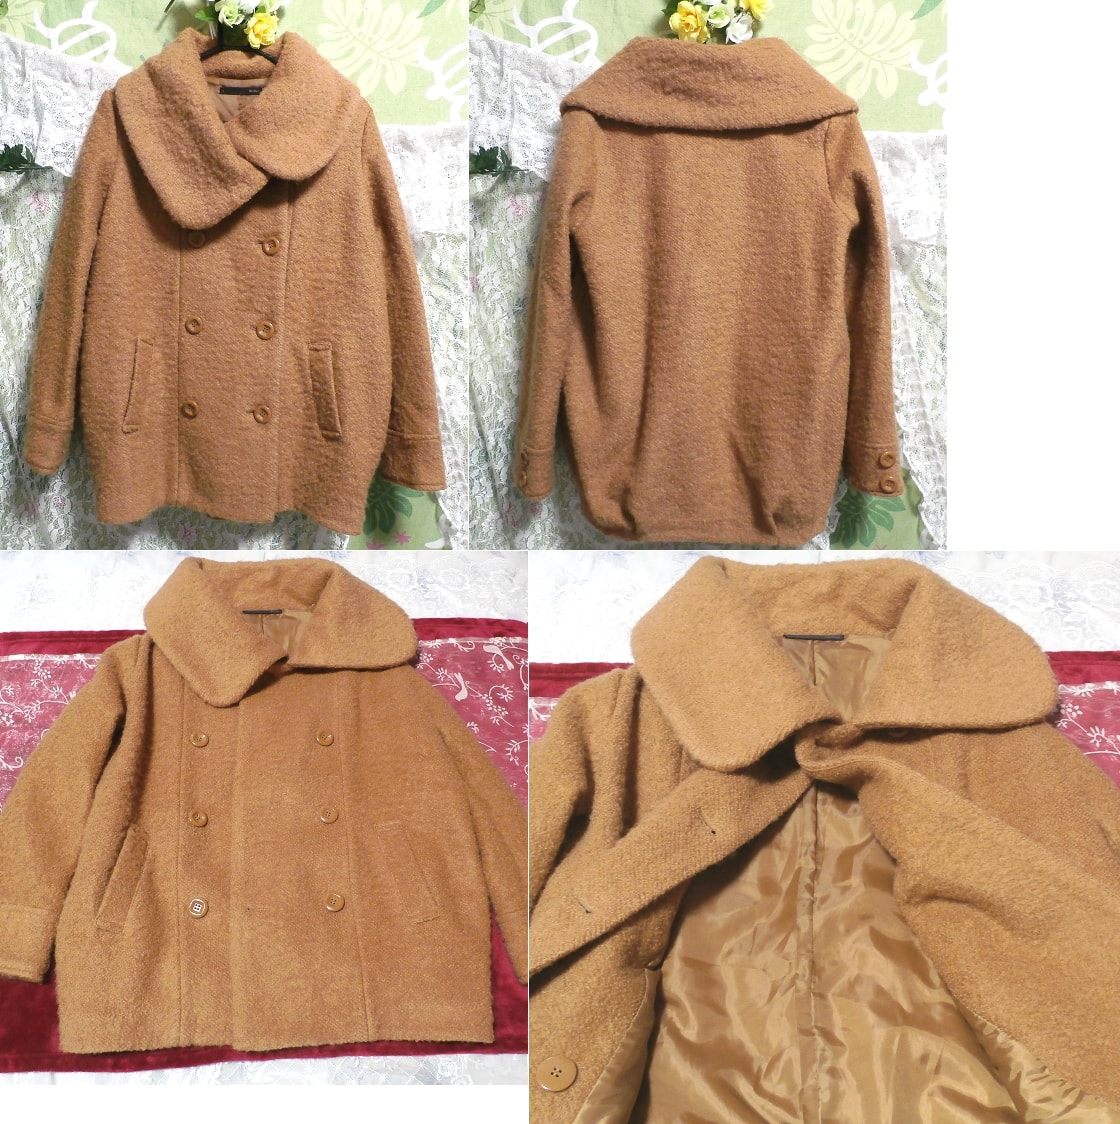 Manteau marron girly chaud et moelleux, manteau, manteau en général, taille m